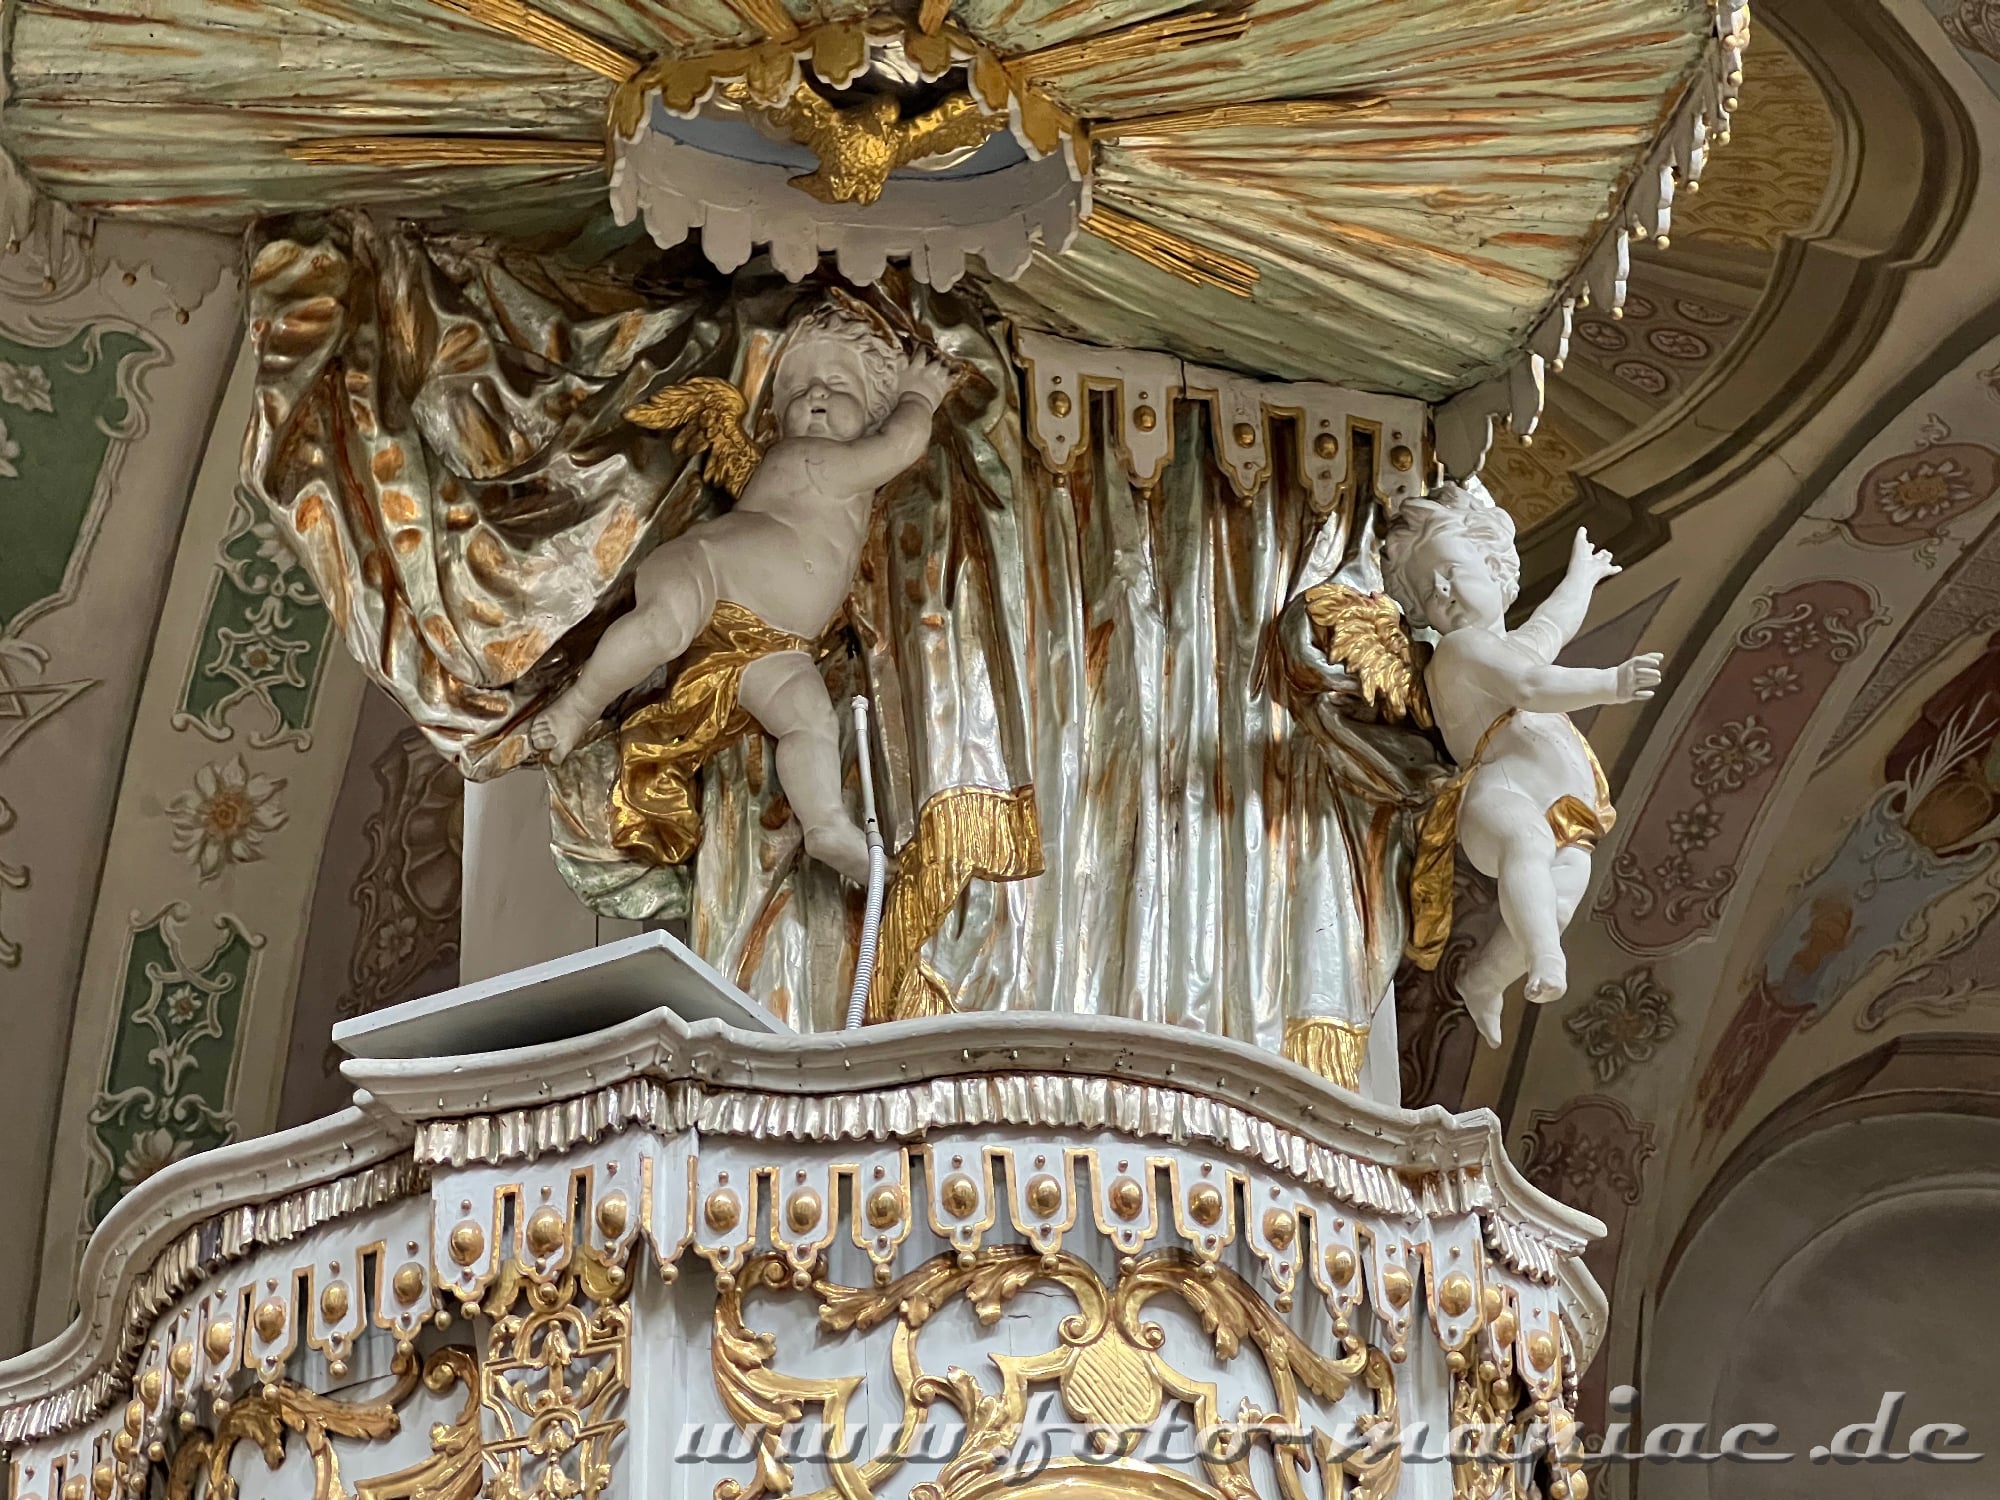 Engel tummeln sich an der Kanzel in der Kirche Emmeram in Regensburg